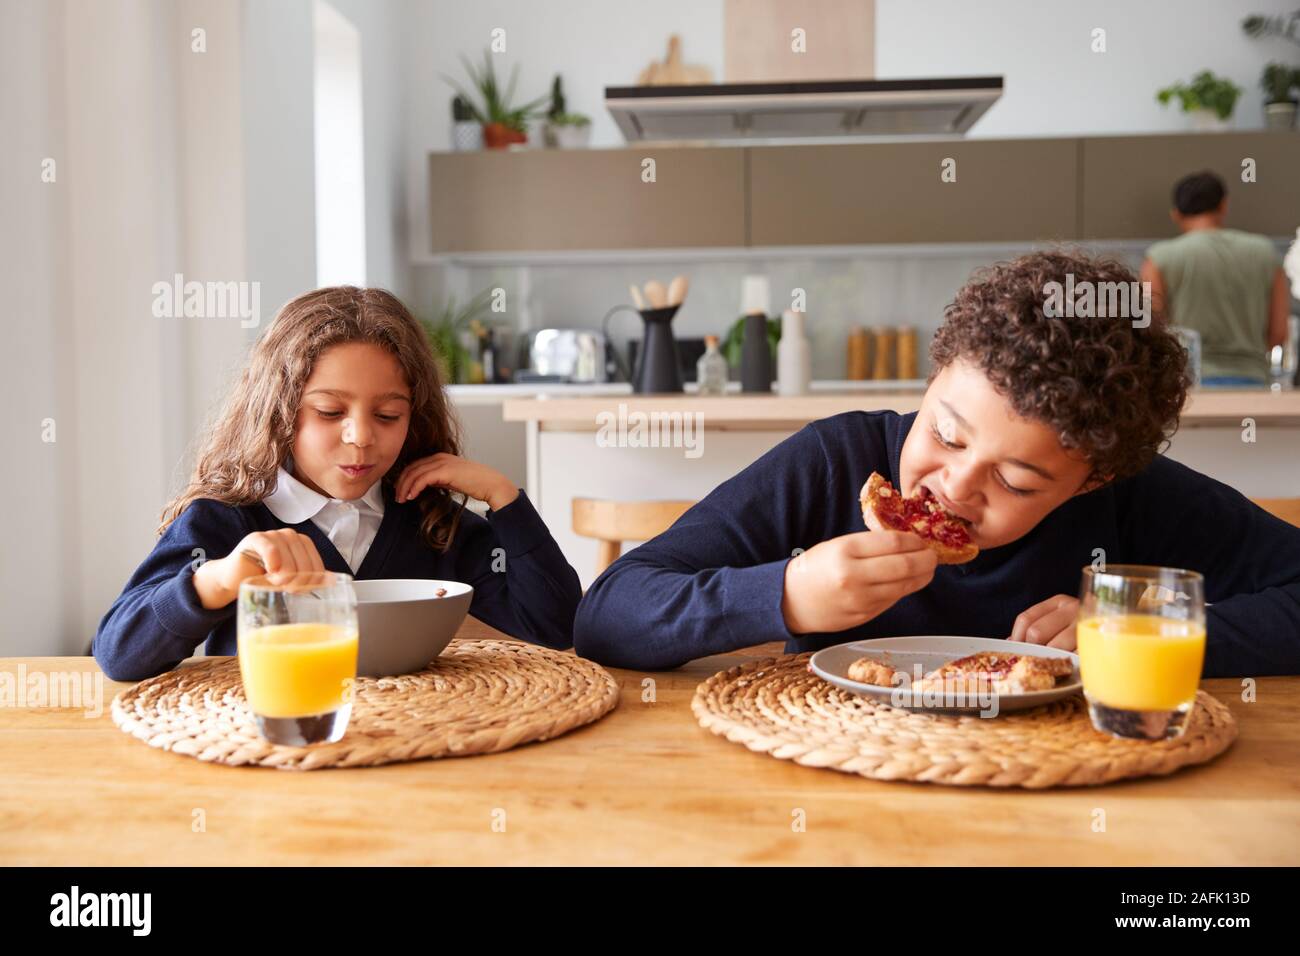 Kinder Uniform tragen In der Küche Frühstücken, bevor sie in die Schule gehen Stockfoto